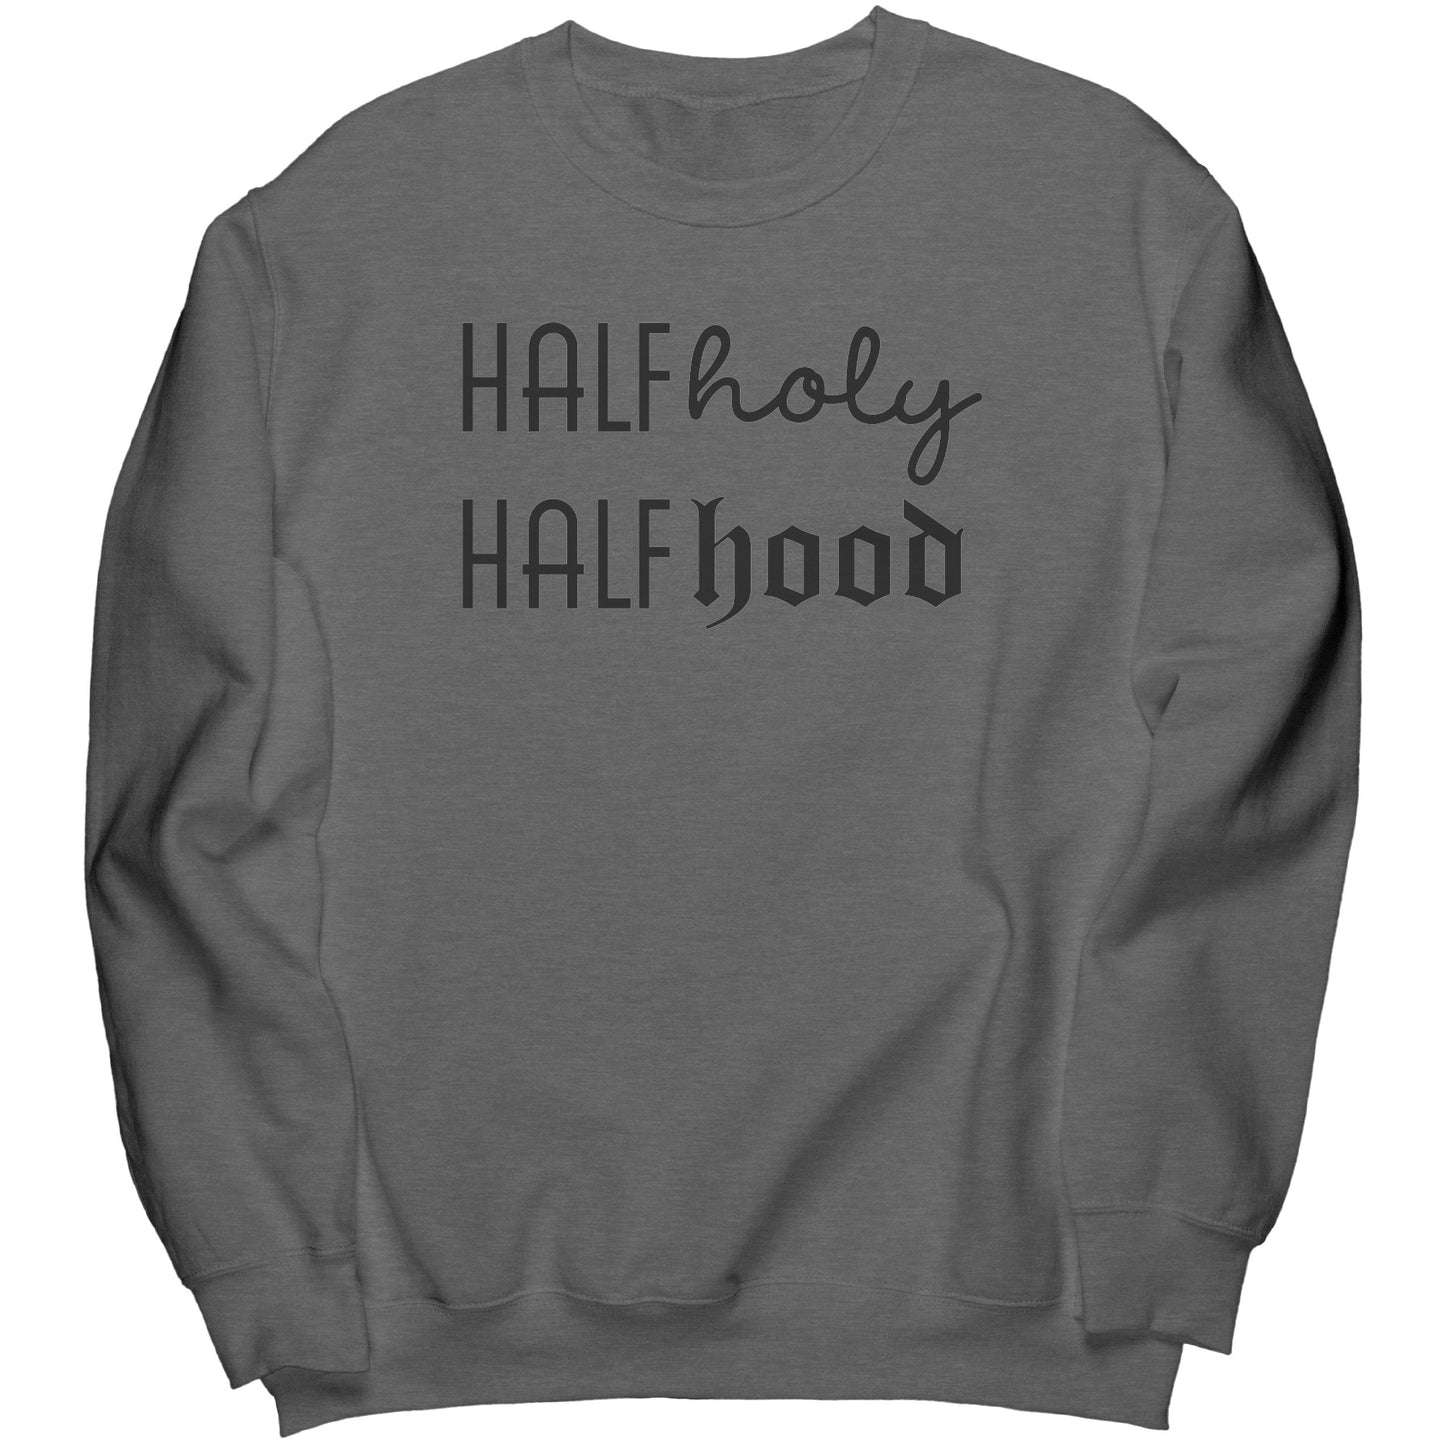 Holy Hood Crew Sweatshirt